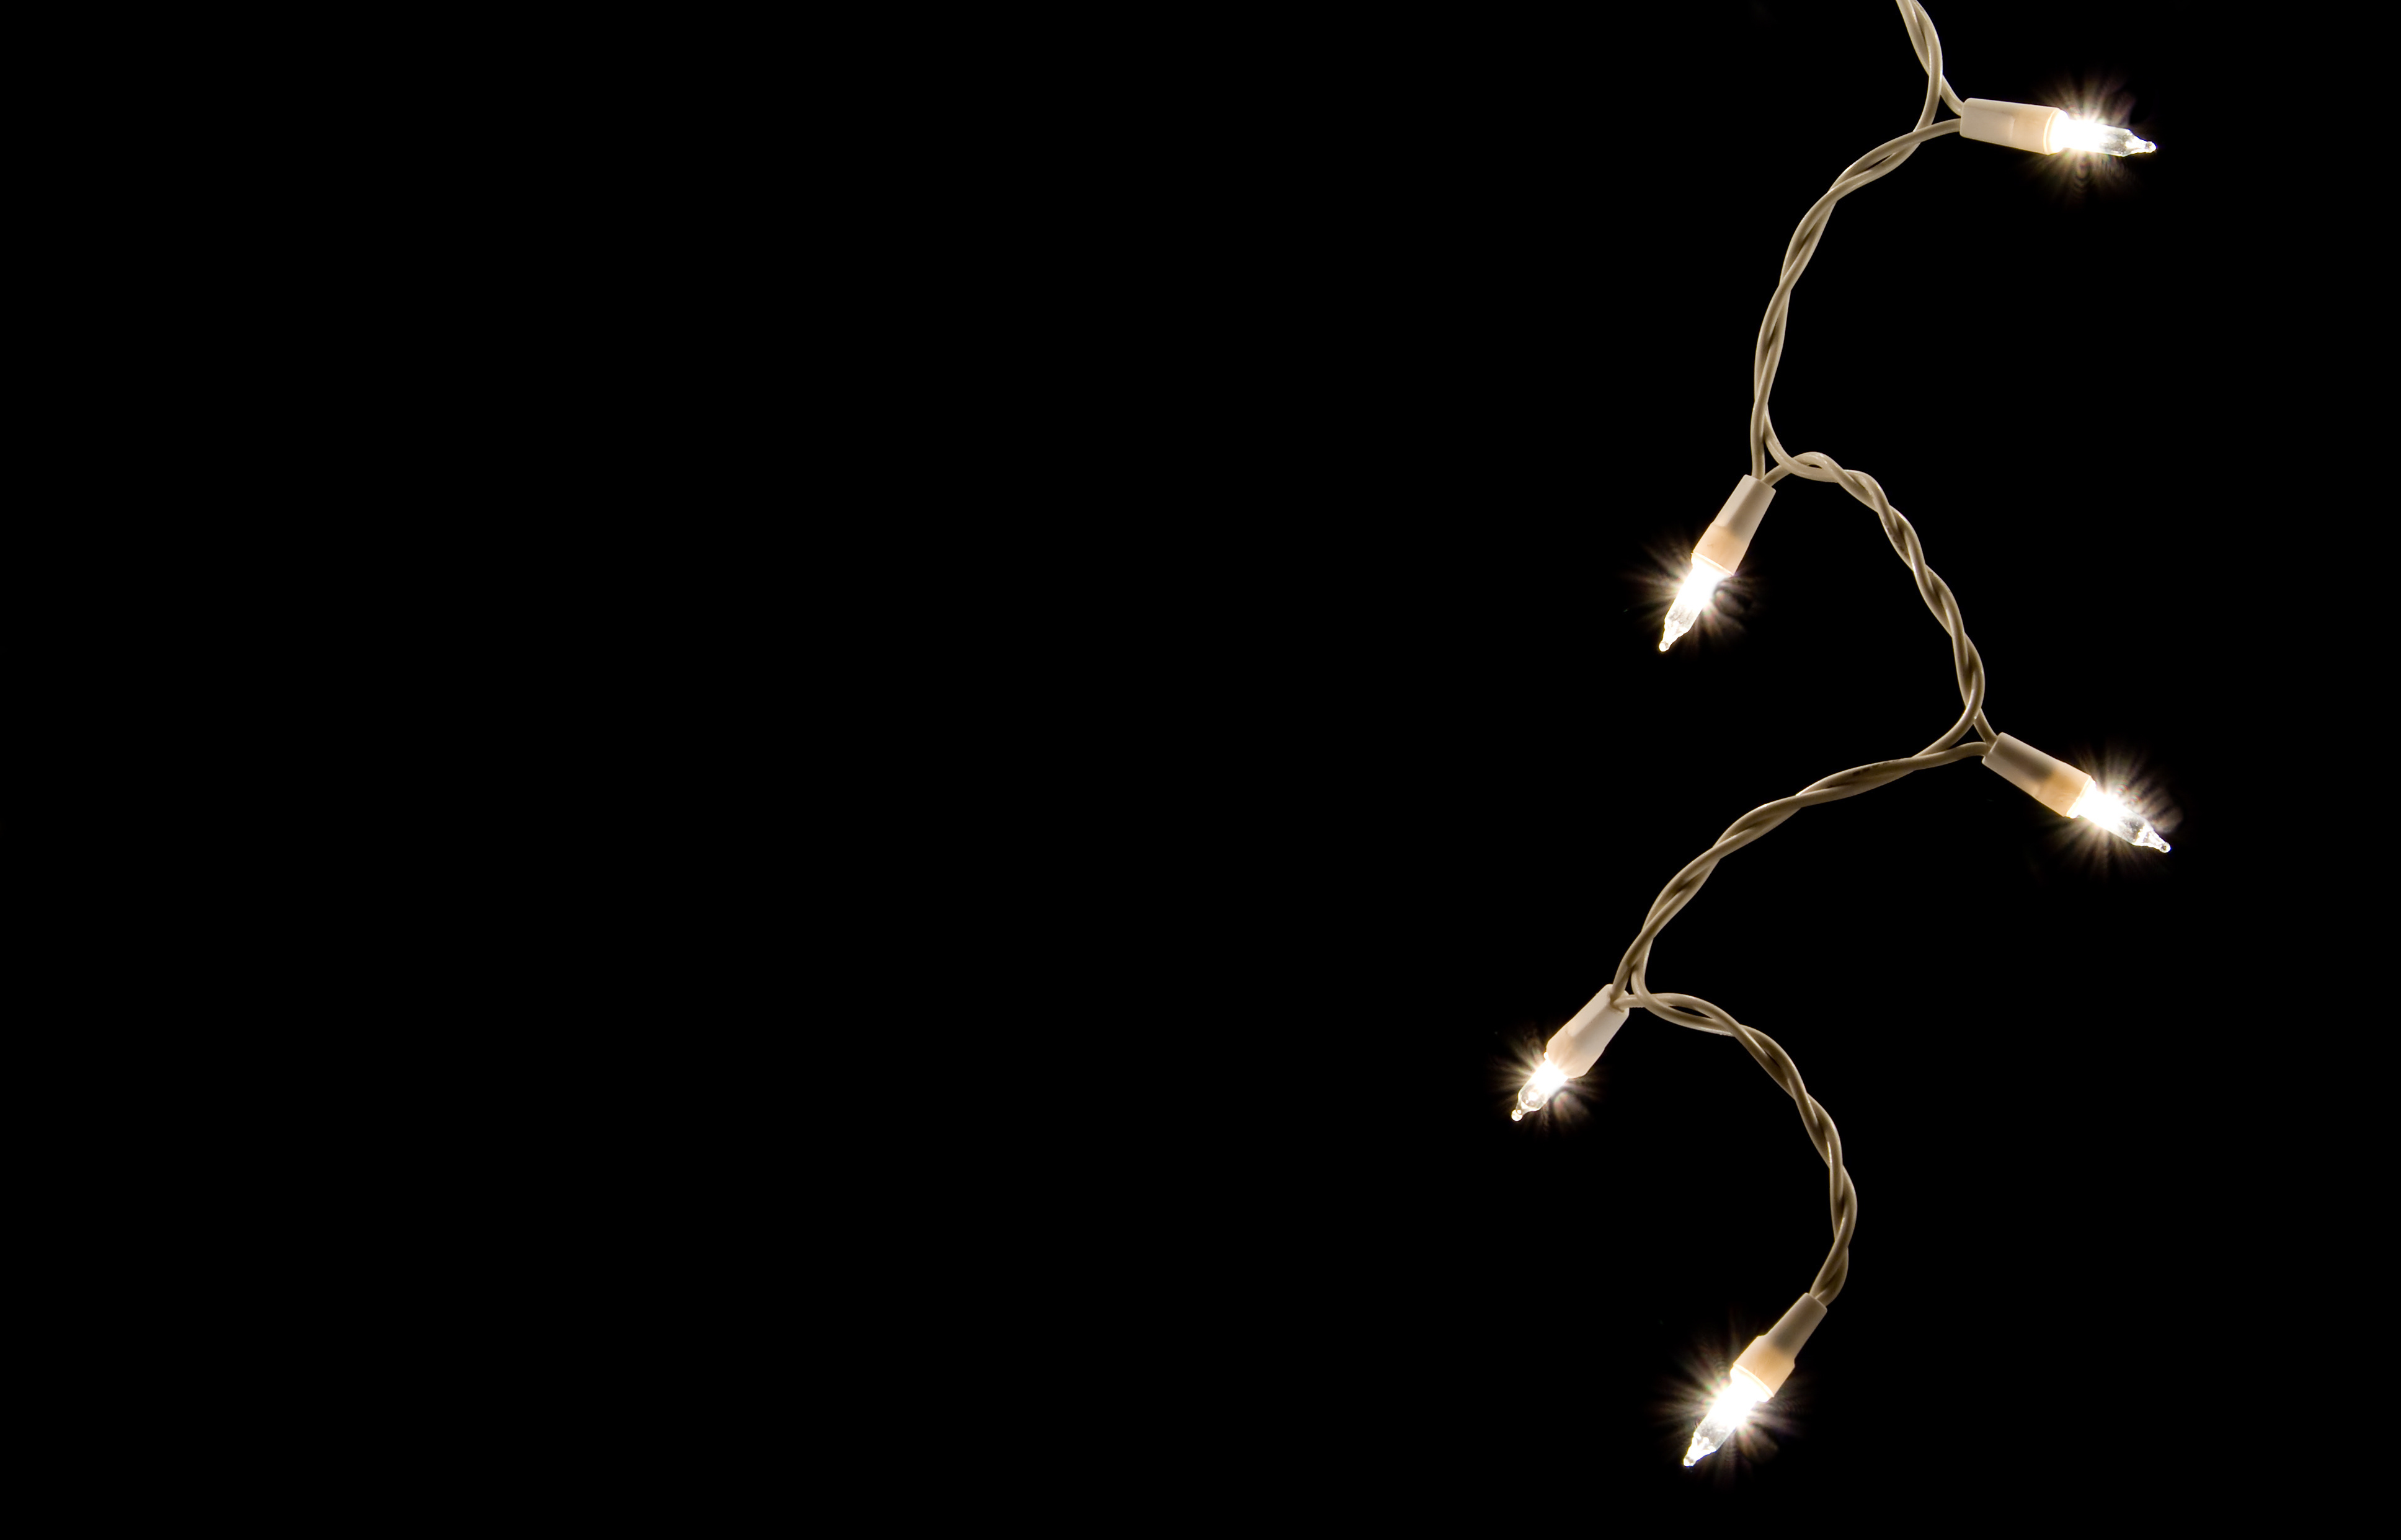 A single strand of Icicle Christmas Lights.